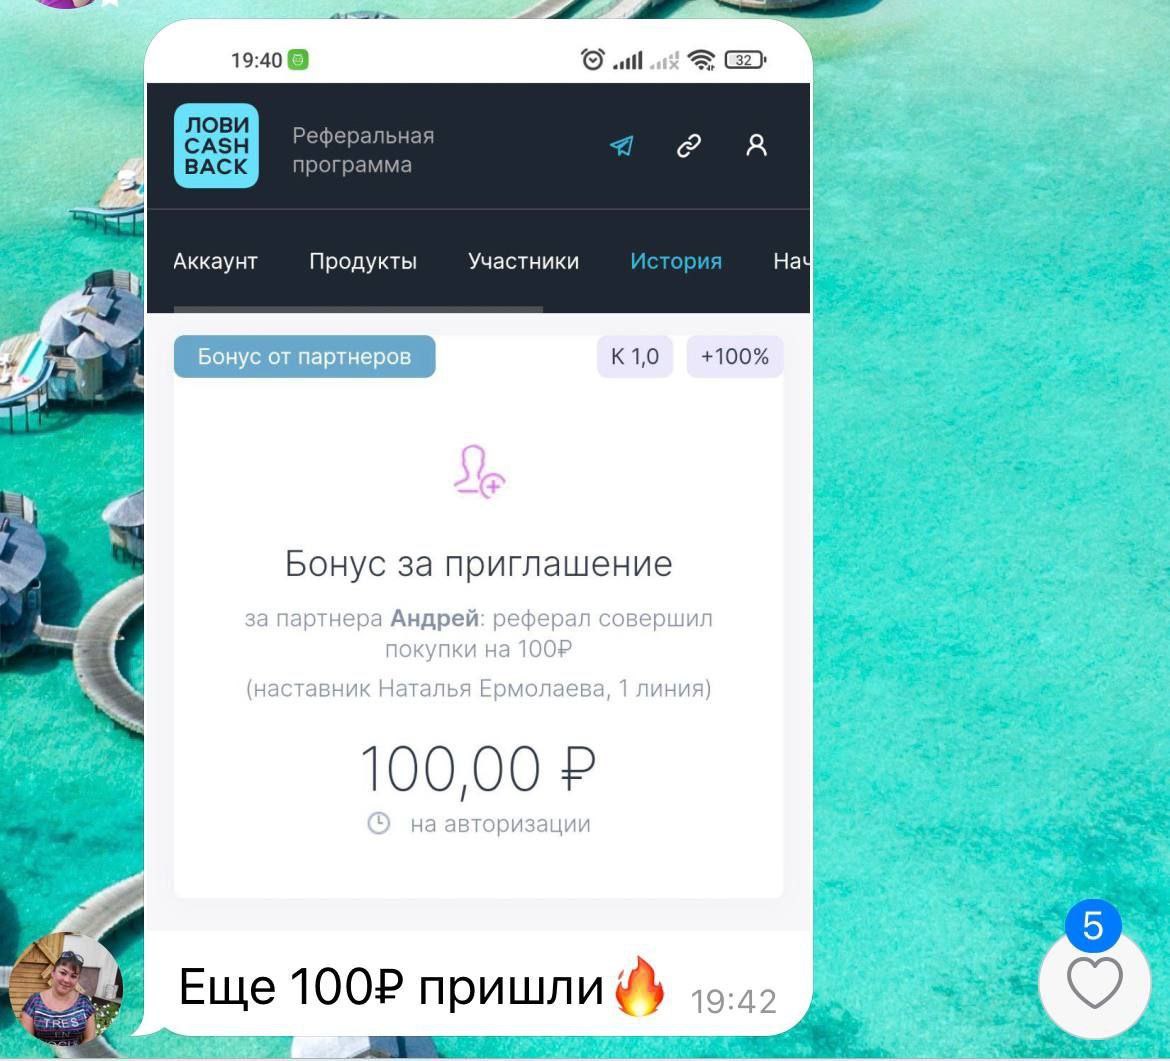 Скачать приложение телеграмм на русском на андроид бесплатно и установить без рекламы фото 119